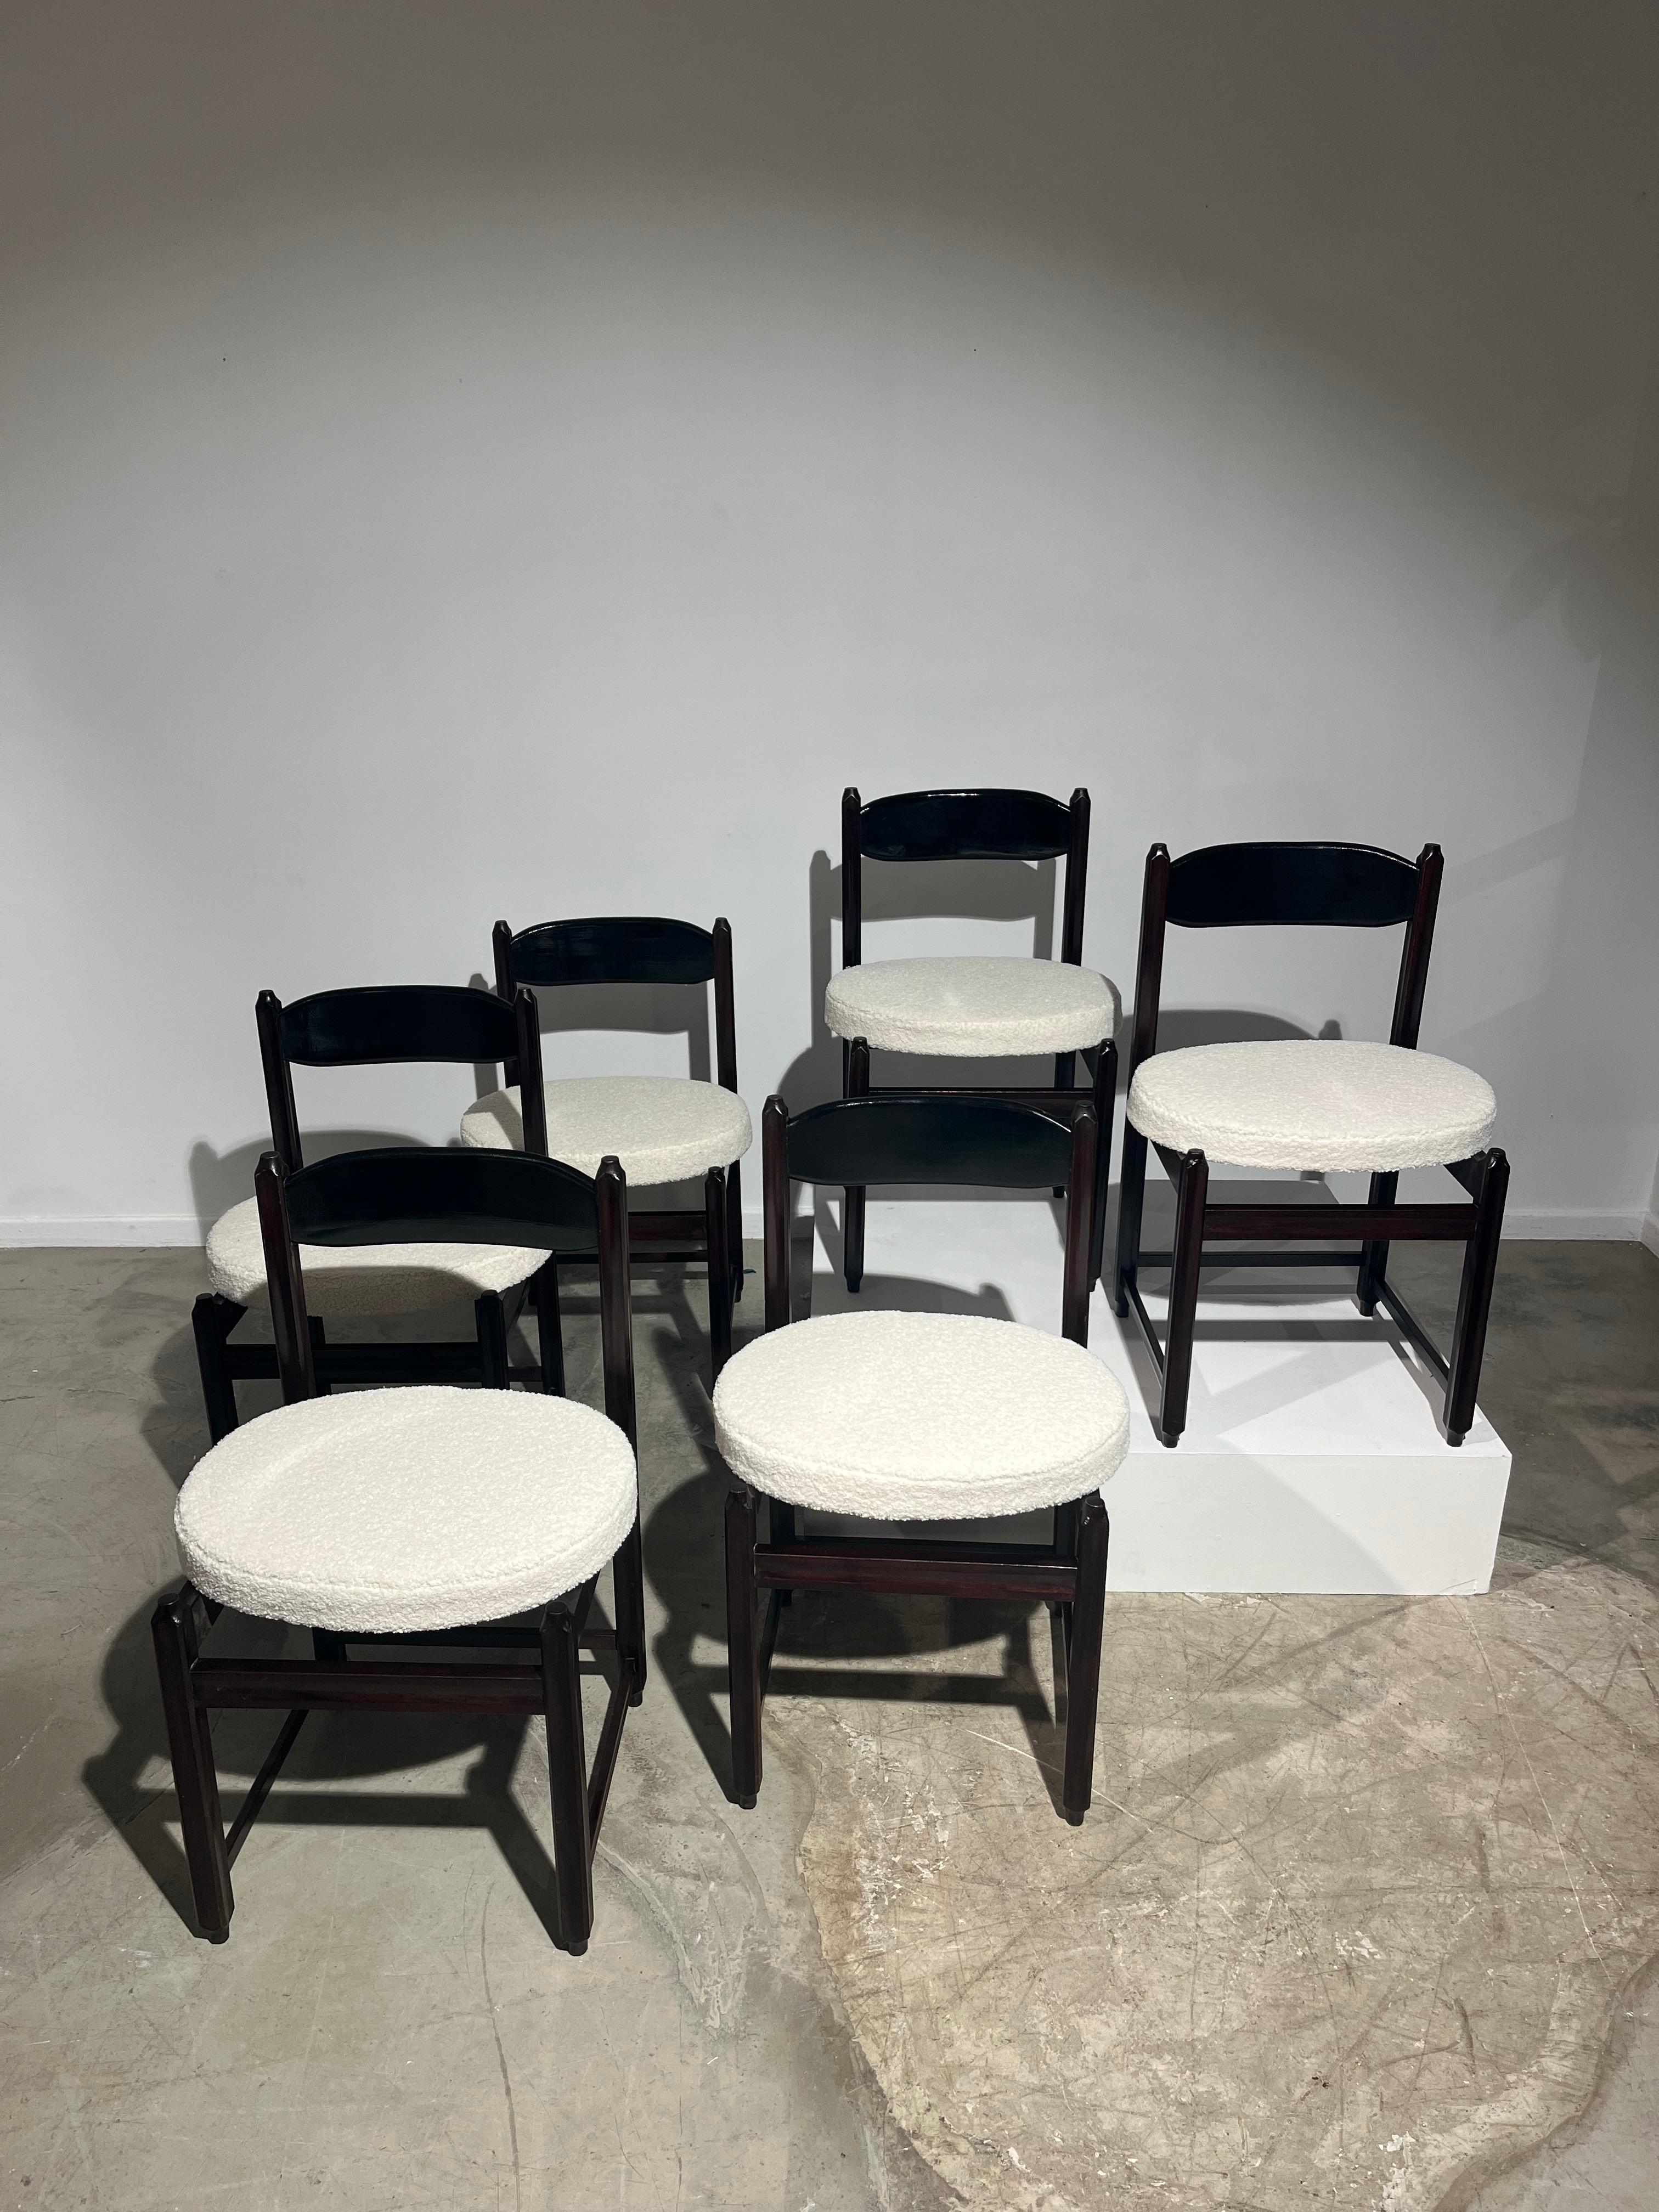 Satz von 6 Stühlen mit weißem, weichem Stoff auf einem schönen runden Sitz, dunkelbrauner Holzstruktur und schwarzer Rückenlehne.